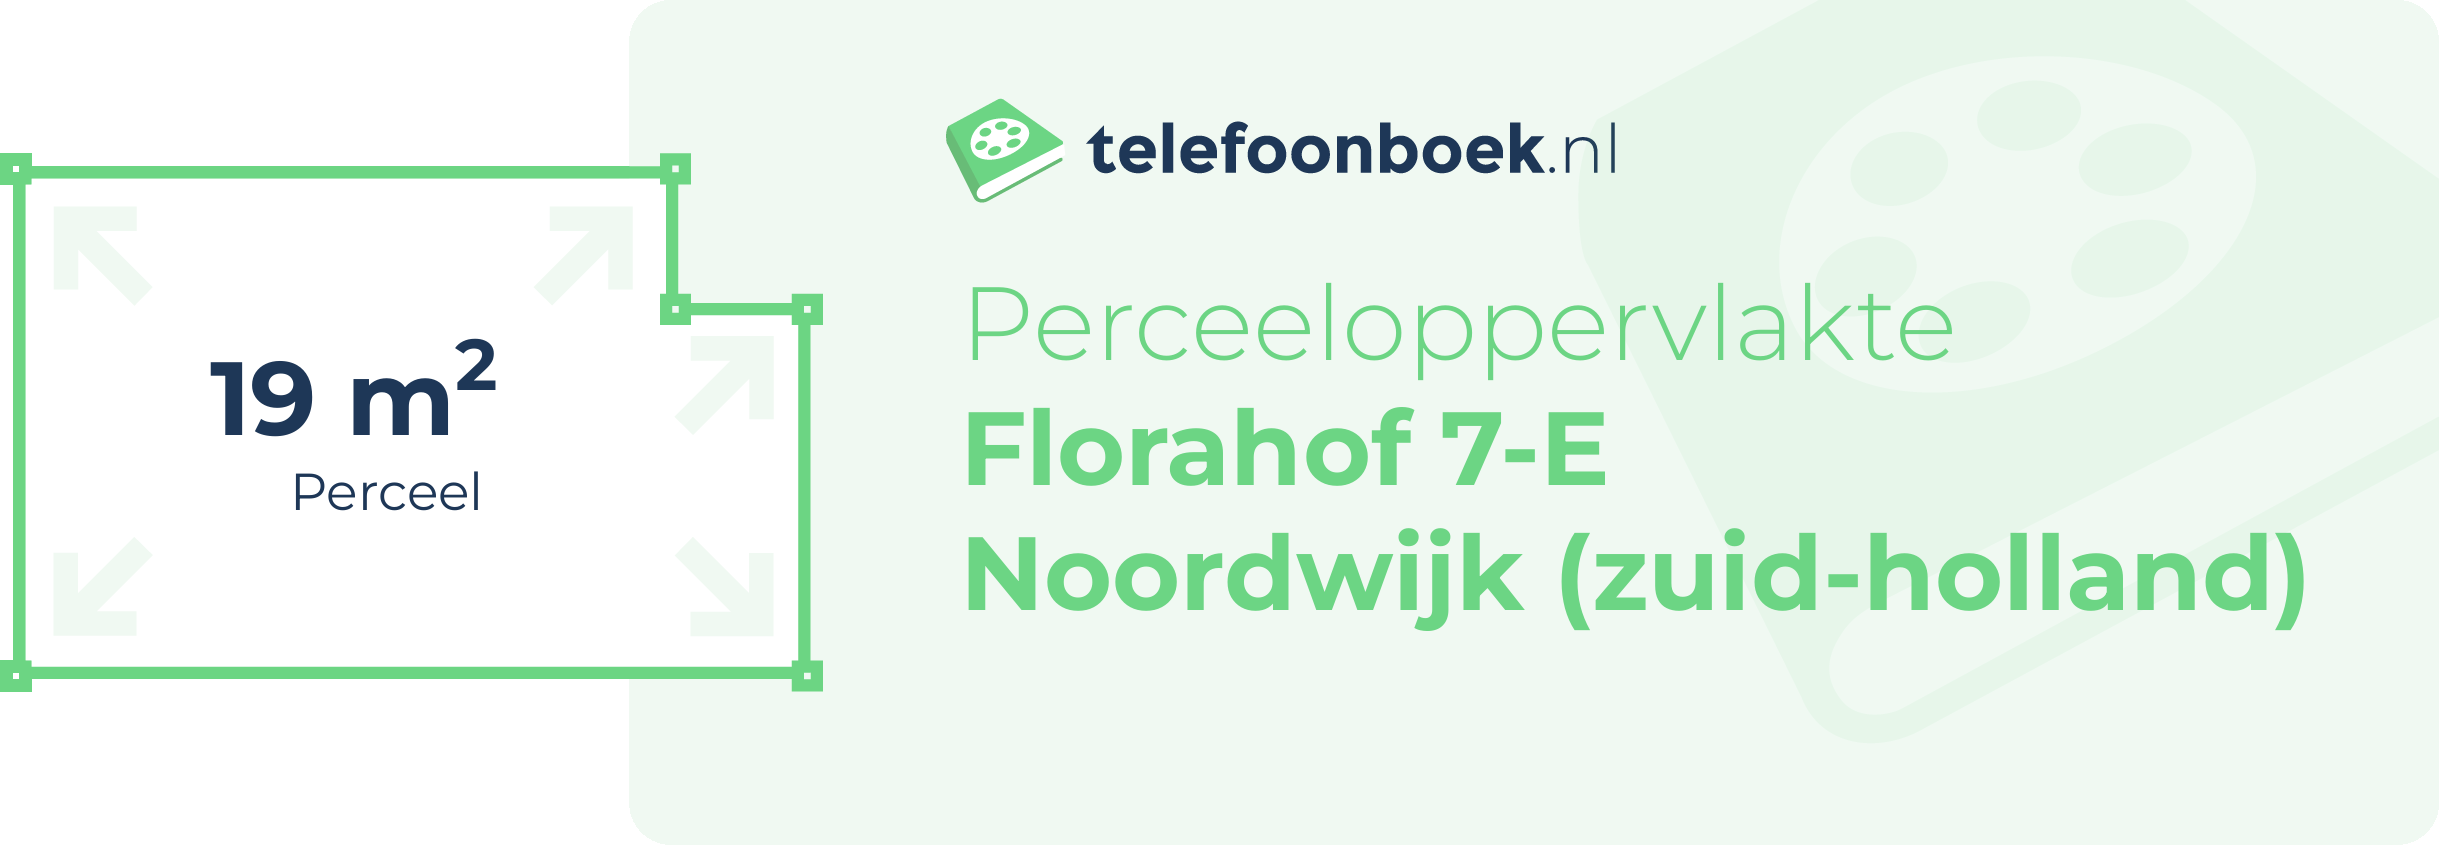 Perceeloppervlakte Florahof 7-E Noordwijk (Zuid-Holland)